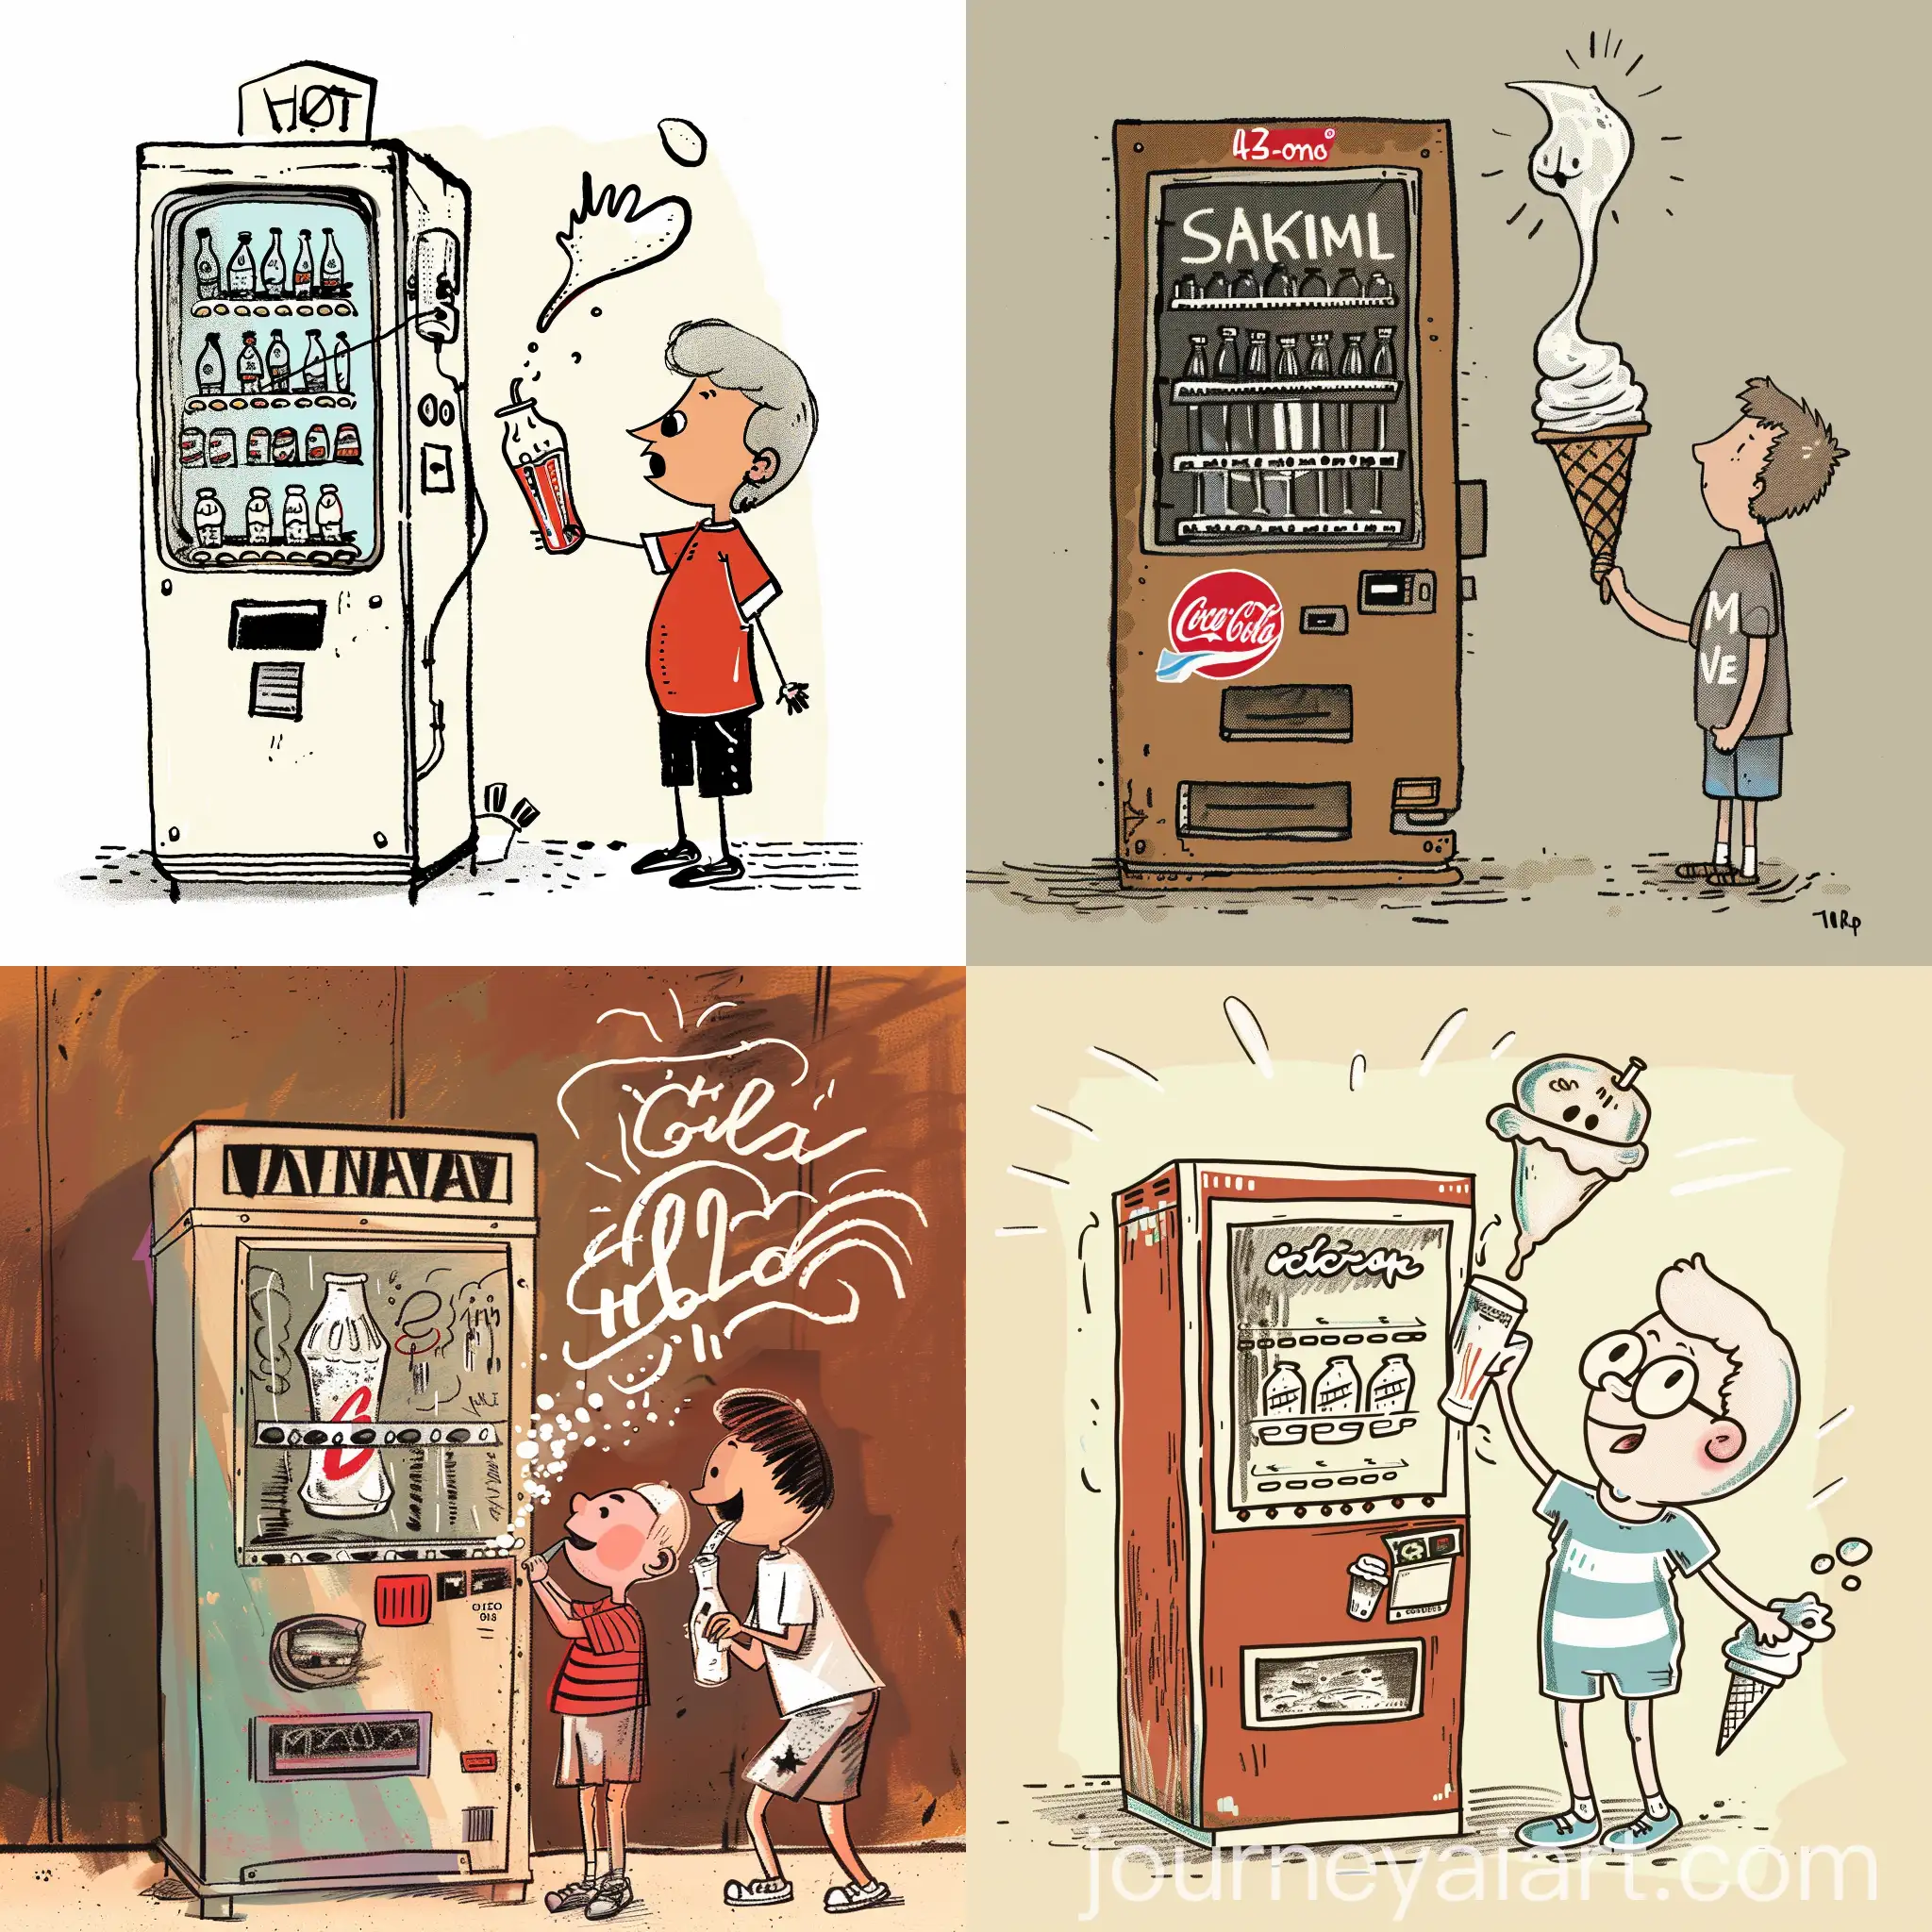 SovietEra-Soda-Machine-Humorous-Cartoon-Scene-with-Kids-and-Ice-Cream